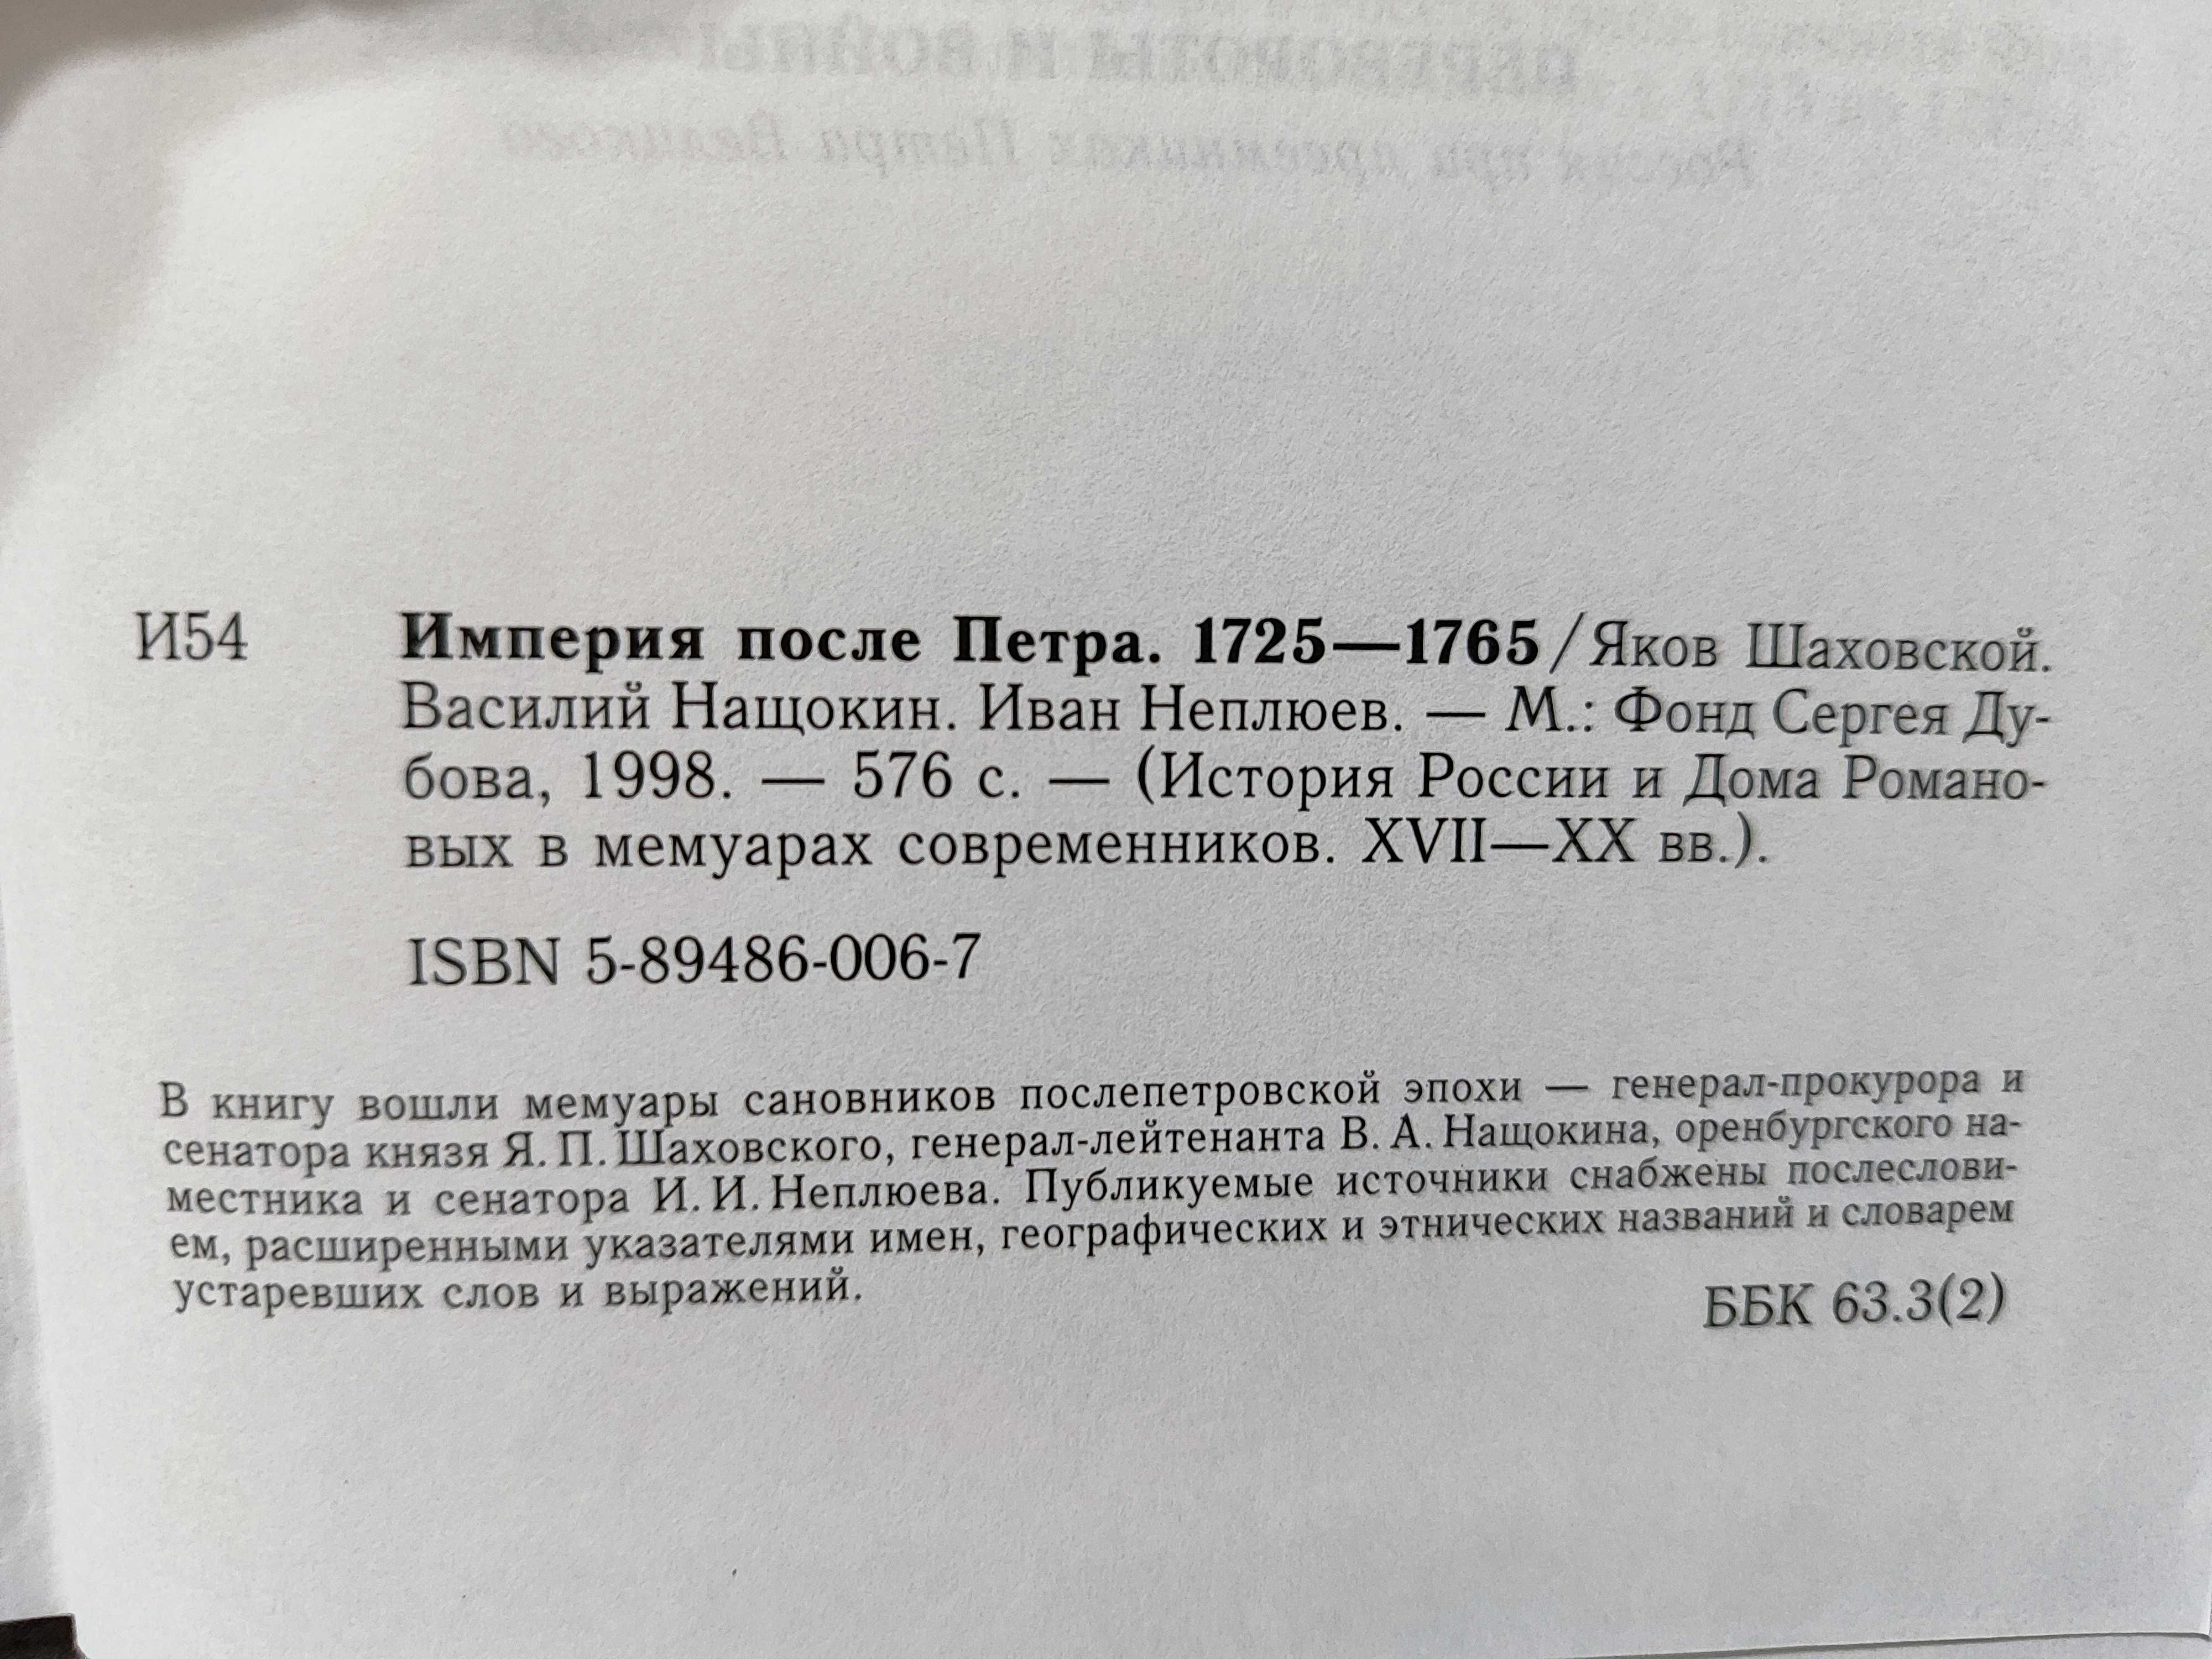 Империя  после Петра. 1725-1765. История России в мемуарах.